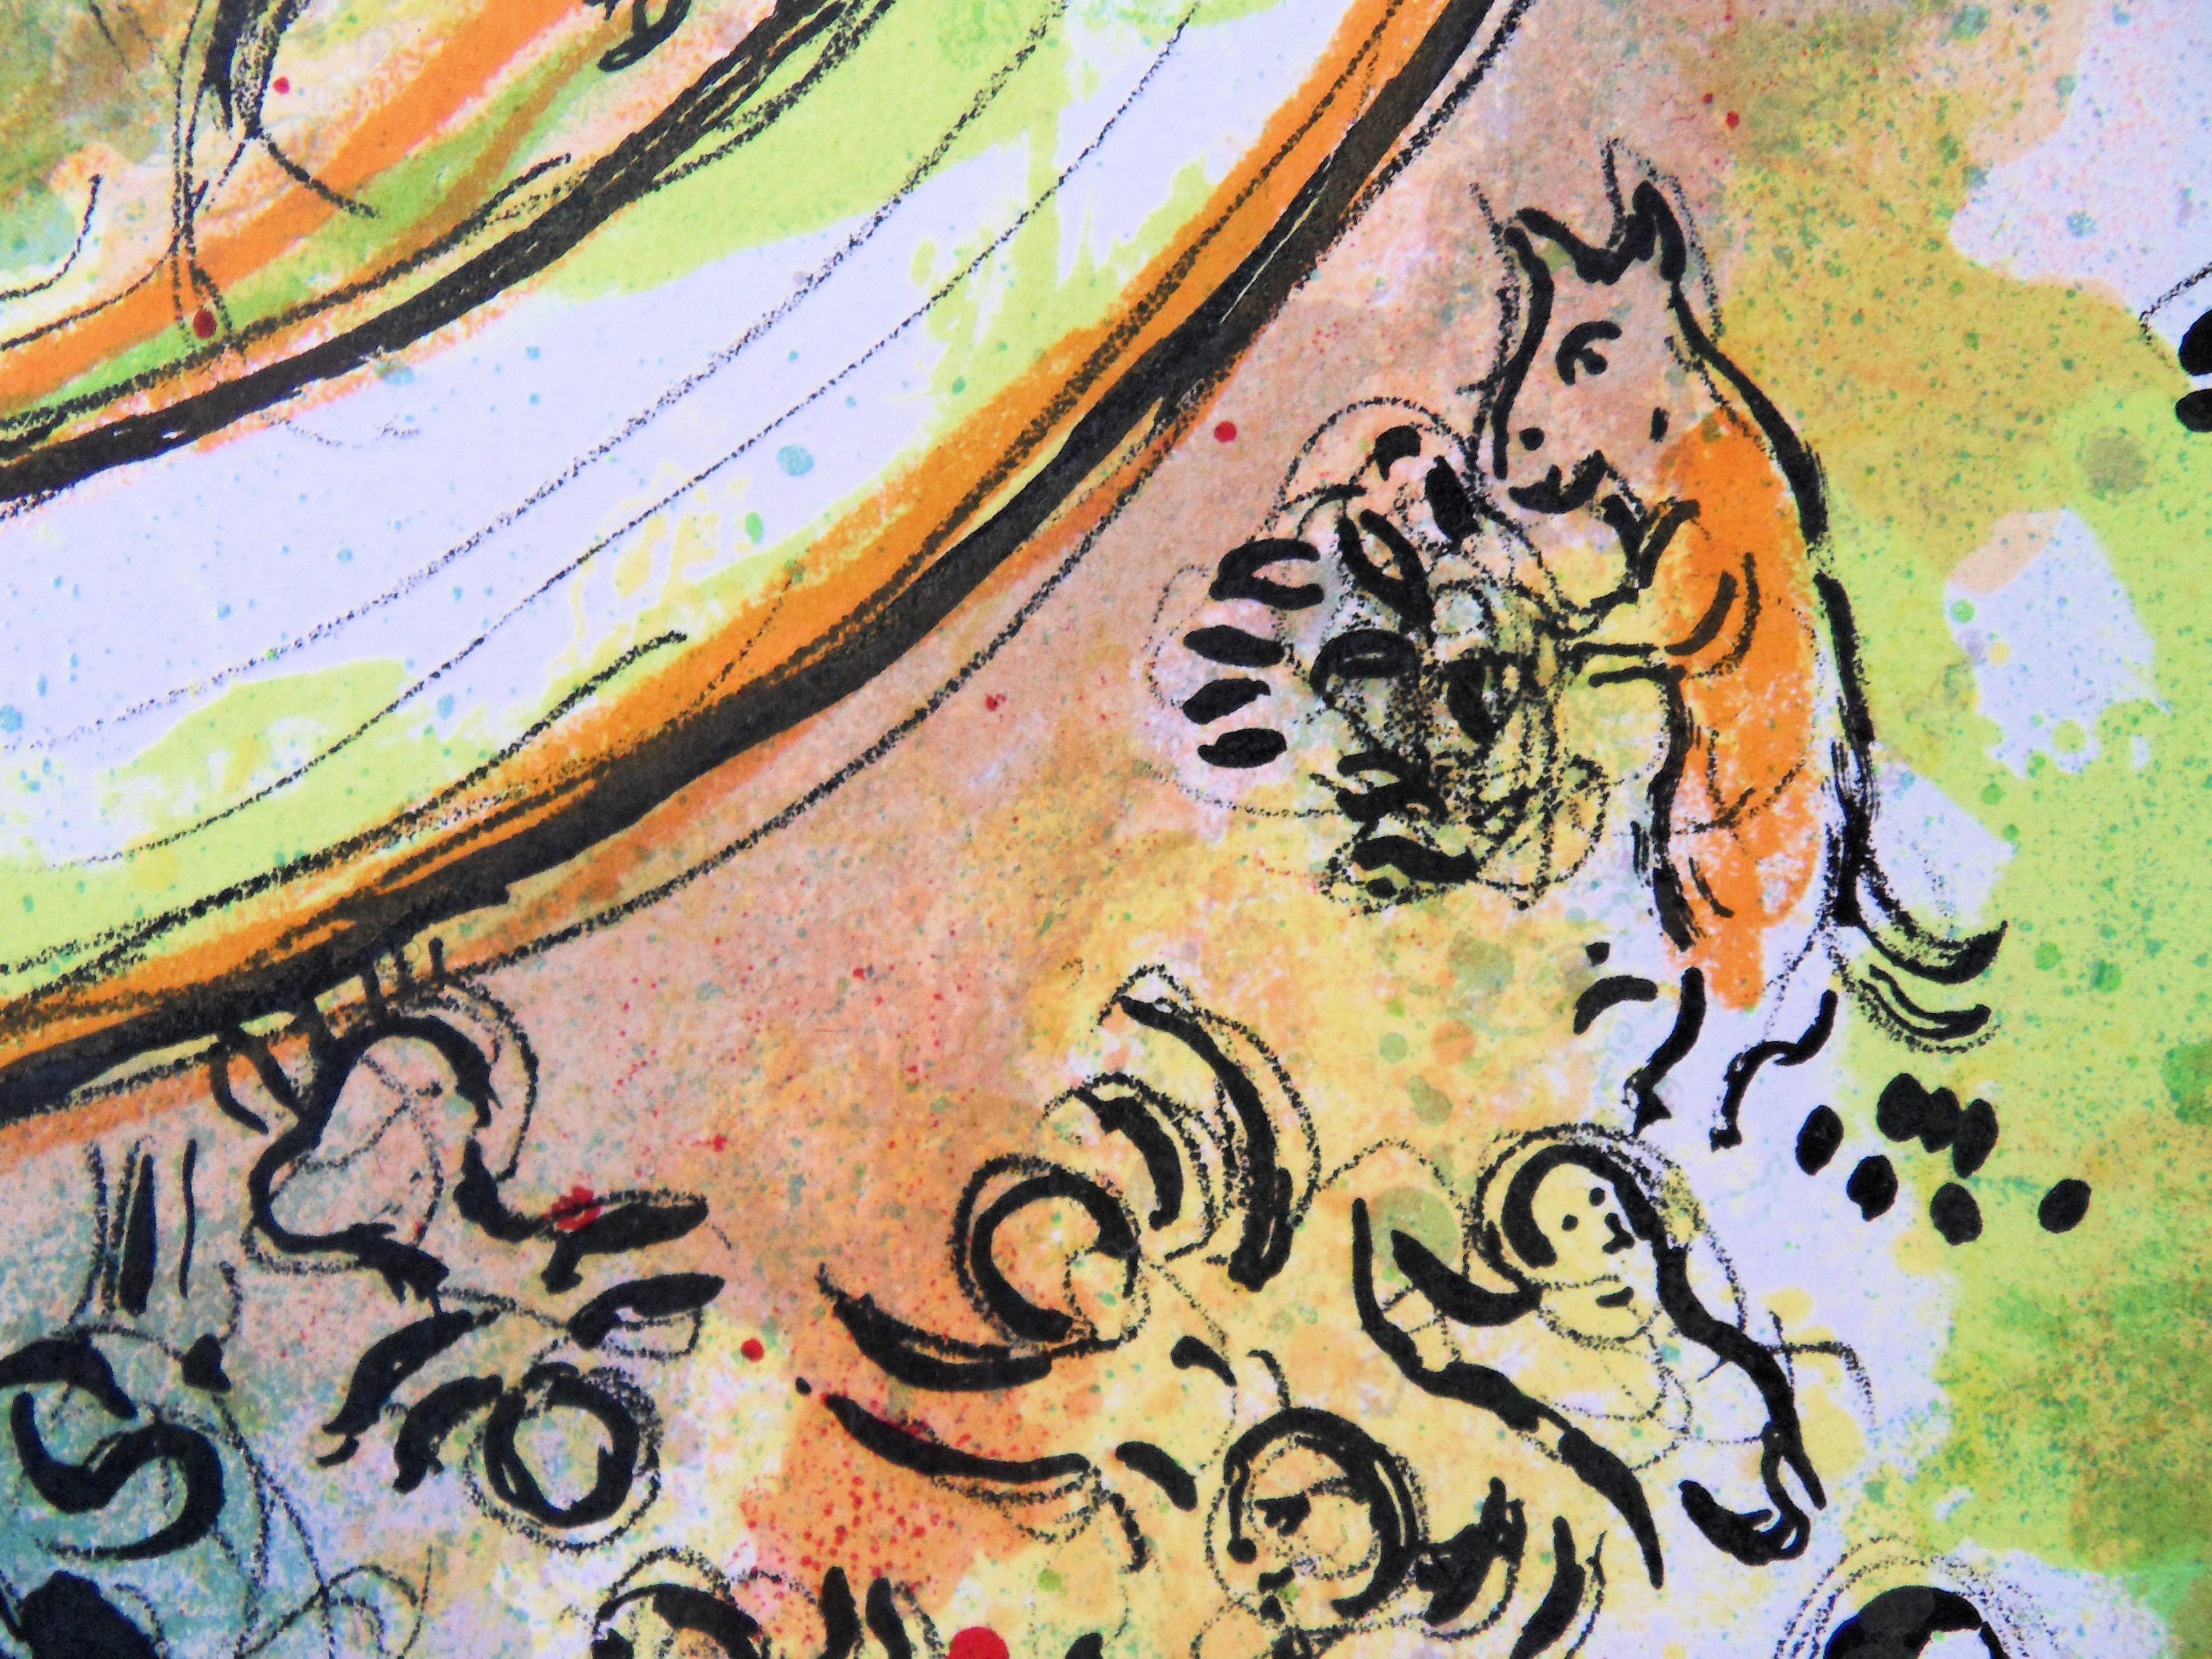 Marc CHAGALL
Paris : Plafond de l'Opéra Garnier

Lithographie originale sur pierre
Non signé et non numéroté
Sur papier 32 x 25 cm (c. 13 x 10 inch)
Publié sous la direction de Sauret, 1962

REFERENCES : Catalogue raisonné Mourlot #434

Très bon